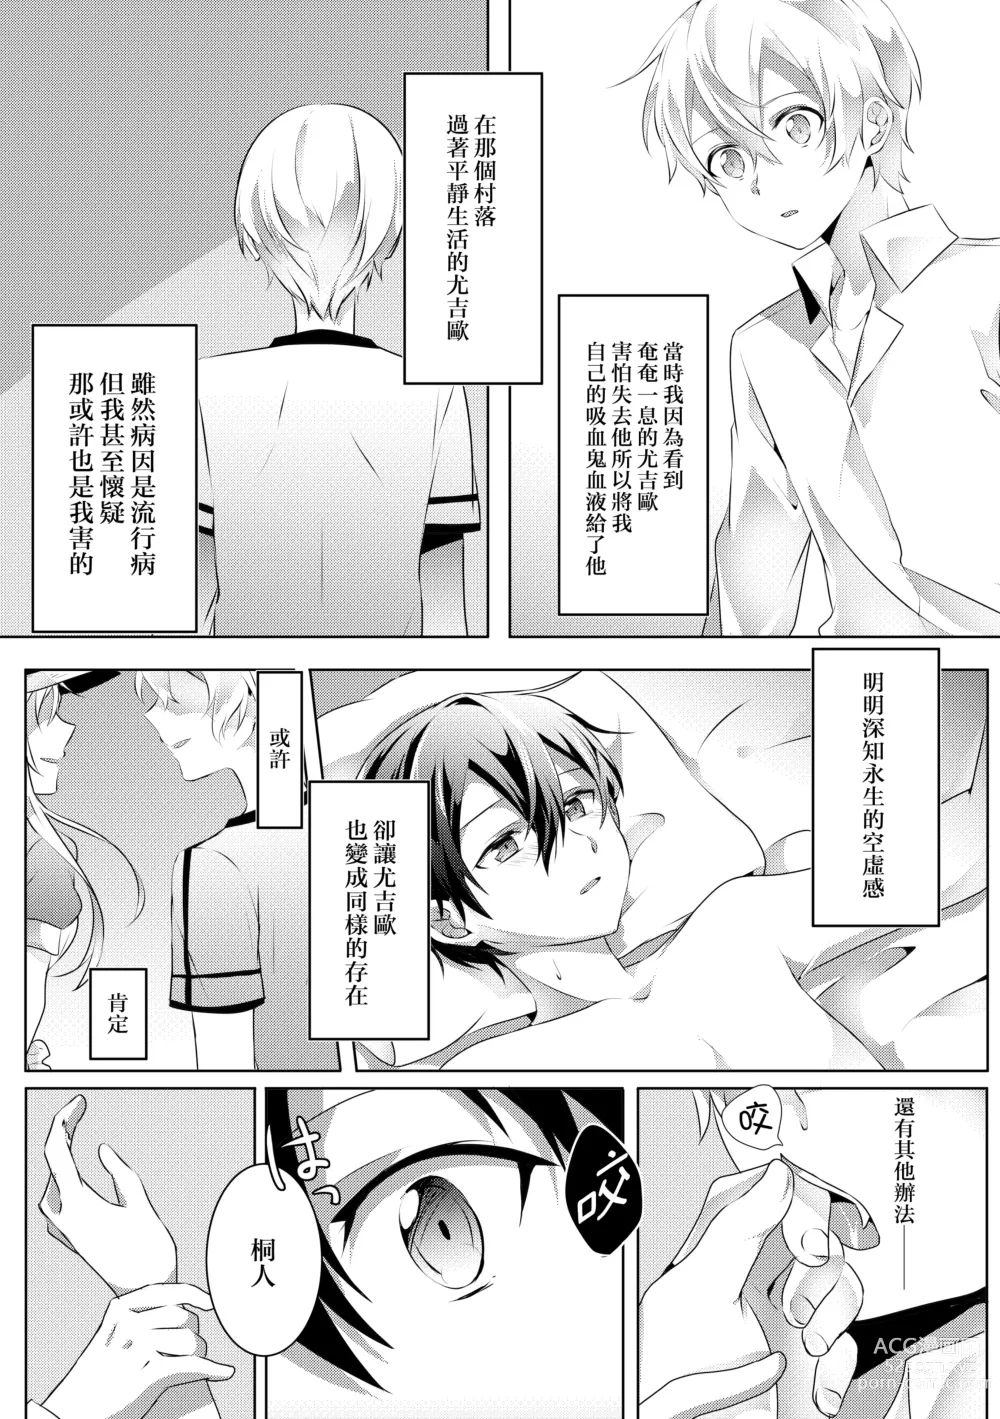 Page 33 of doujinshi Kimi to Boku no Waltz